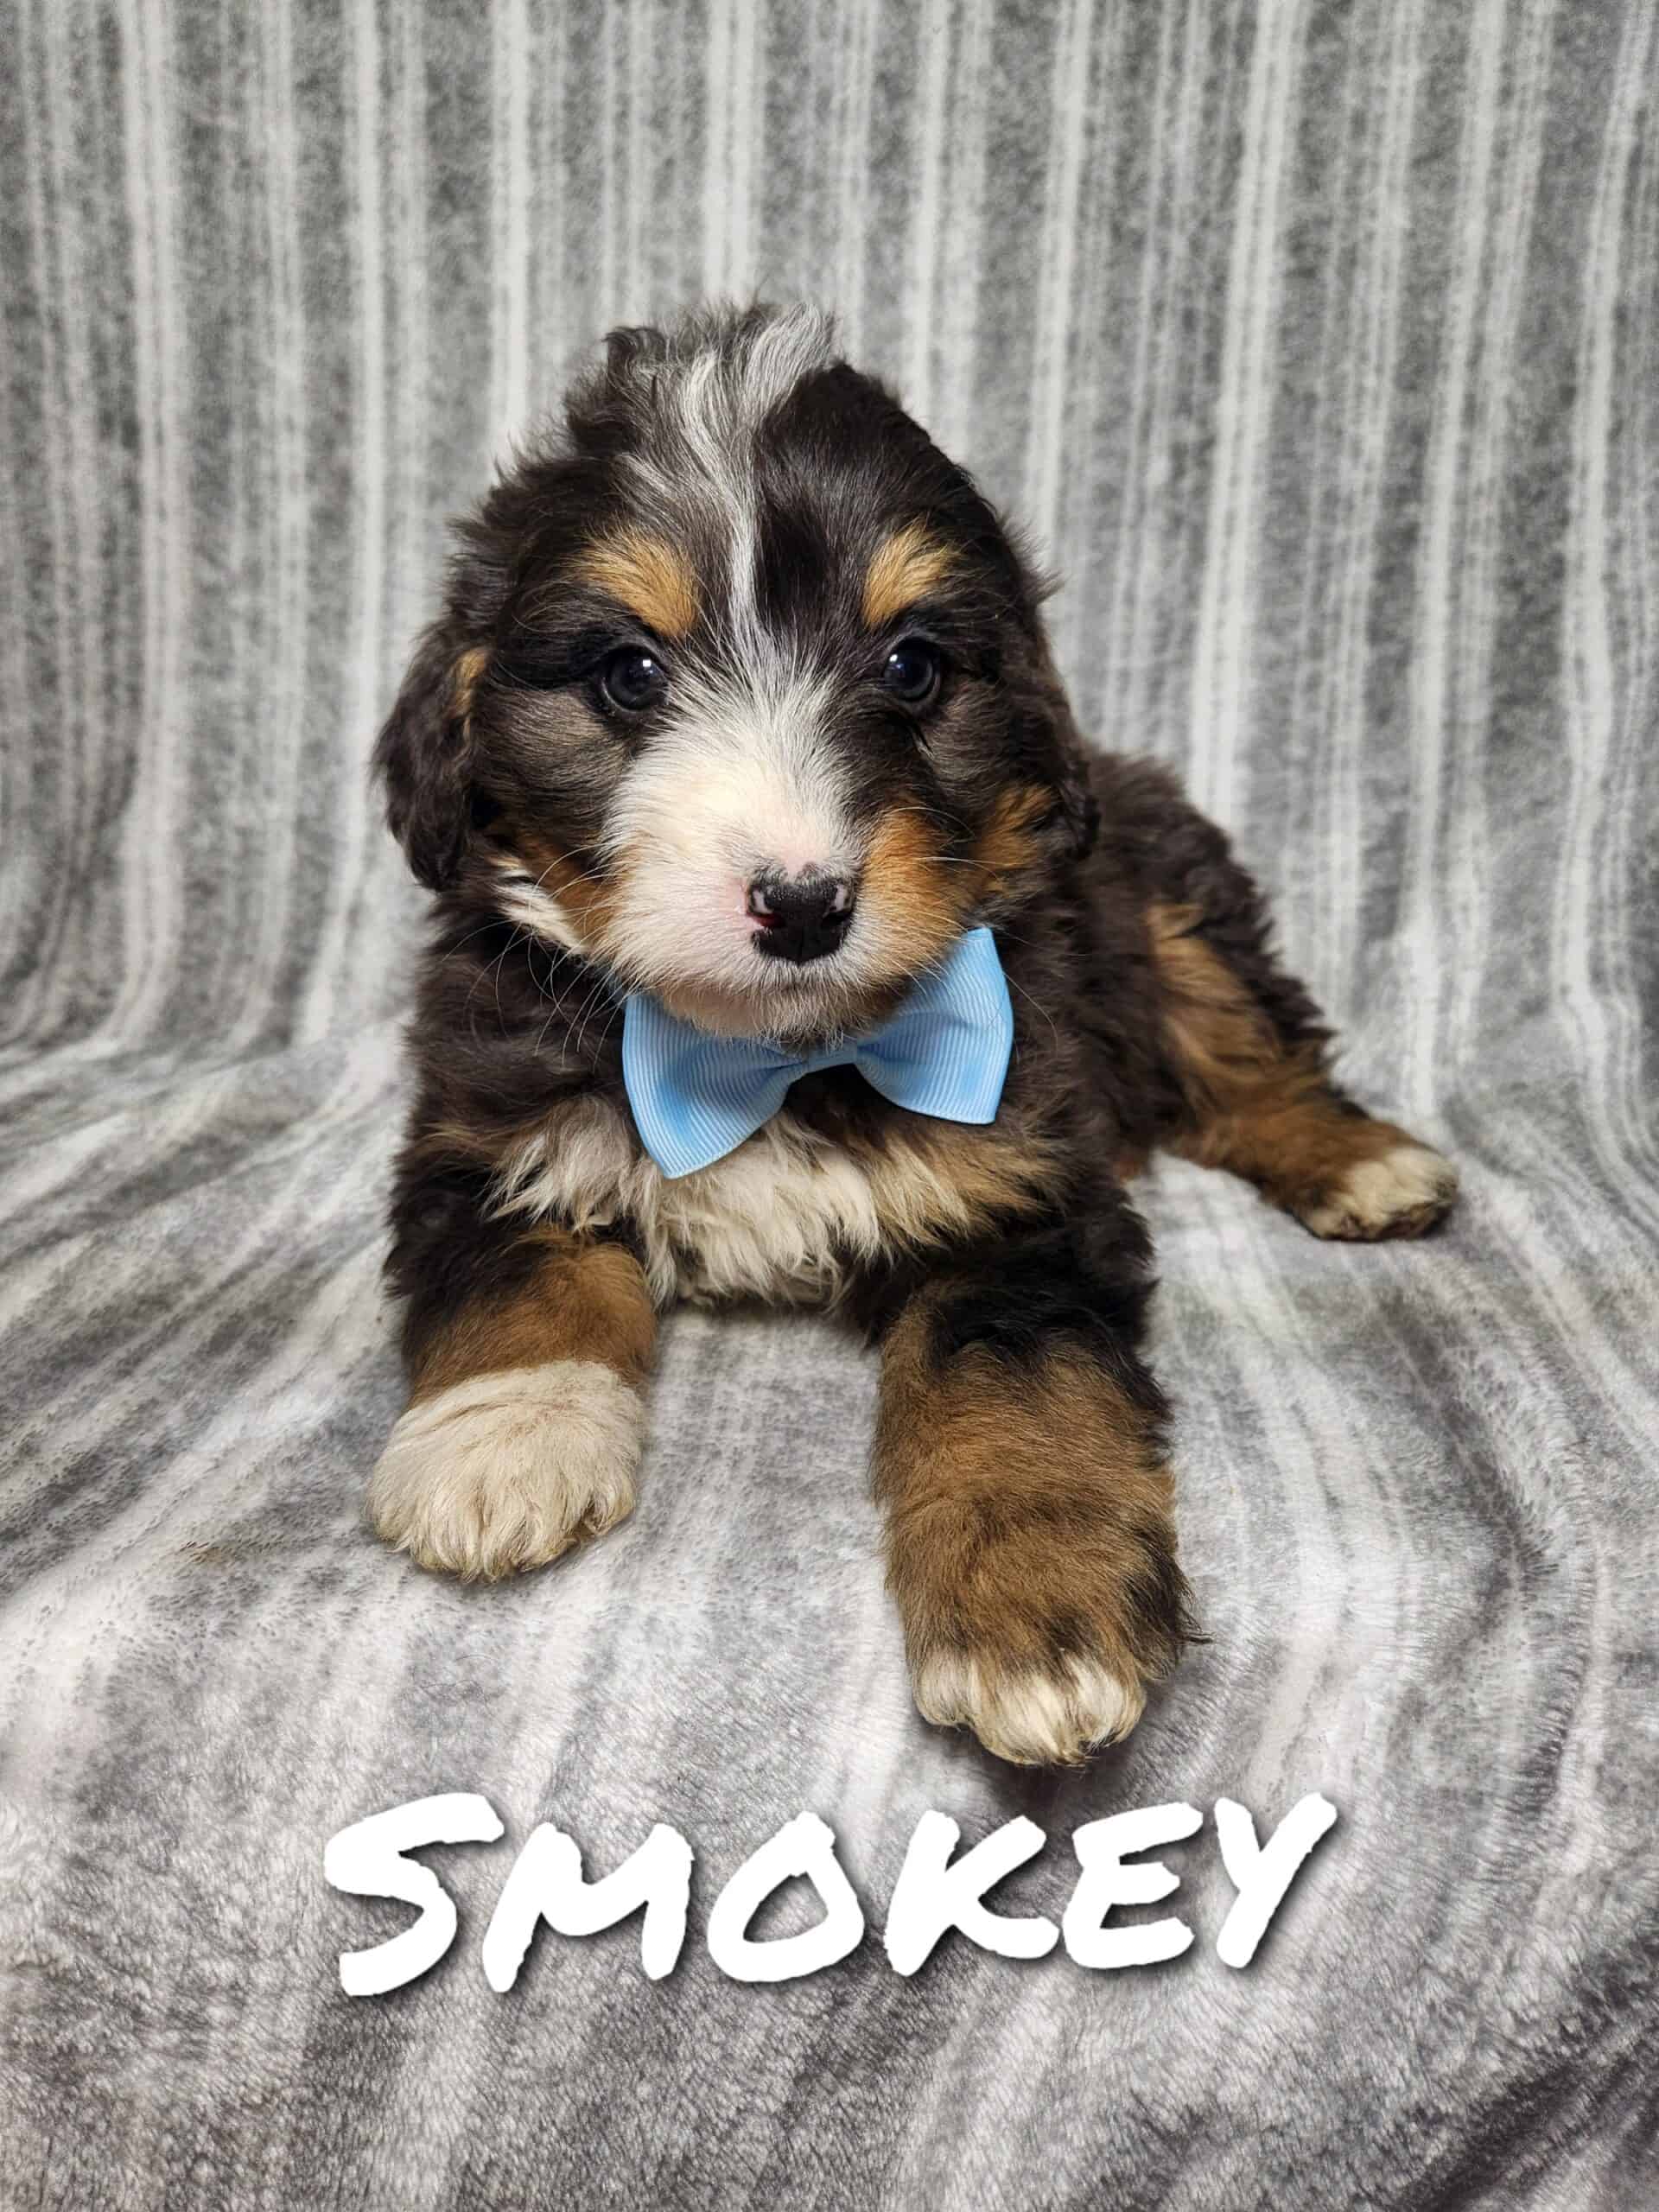 Mini Bernedoodle puppy Smokey